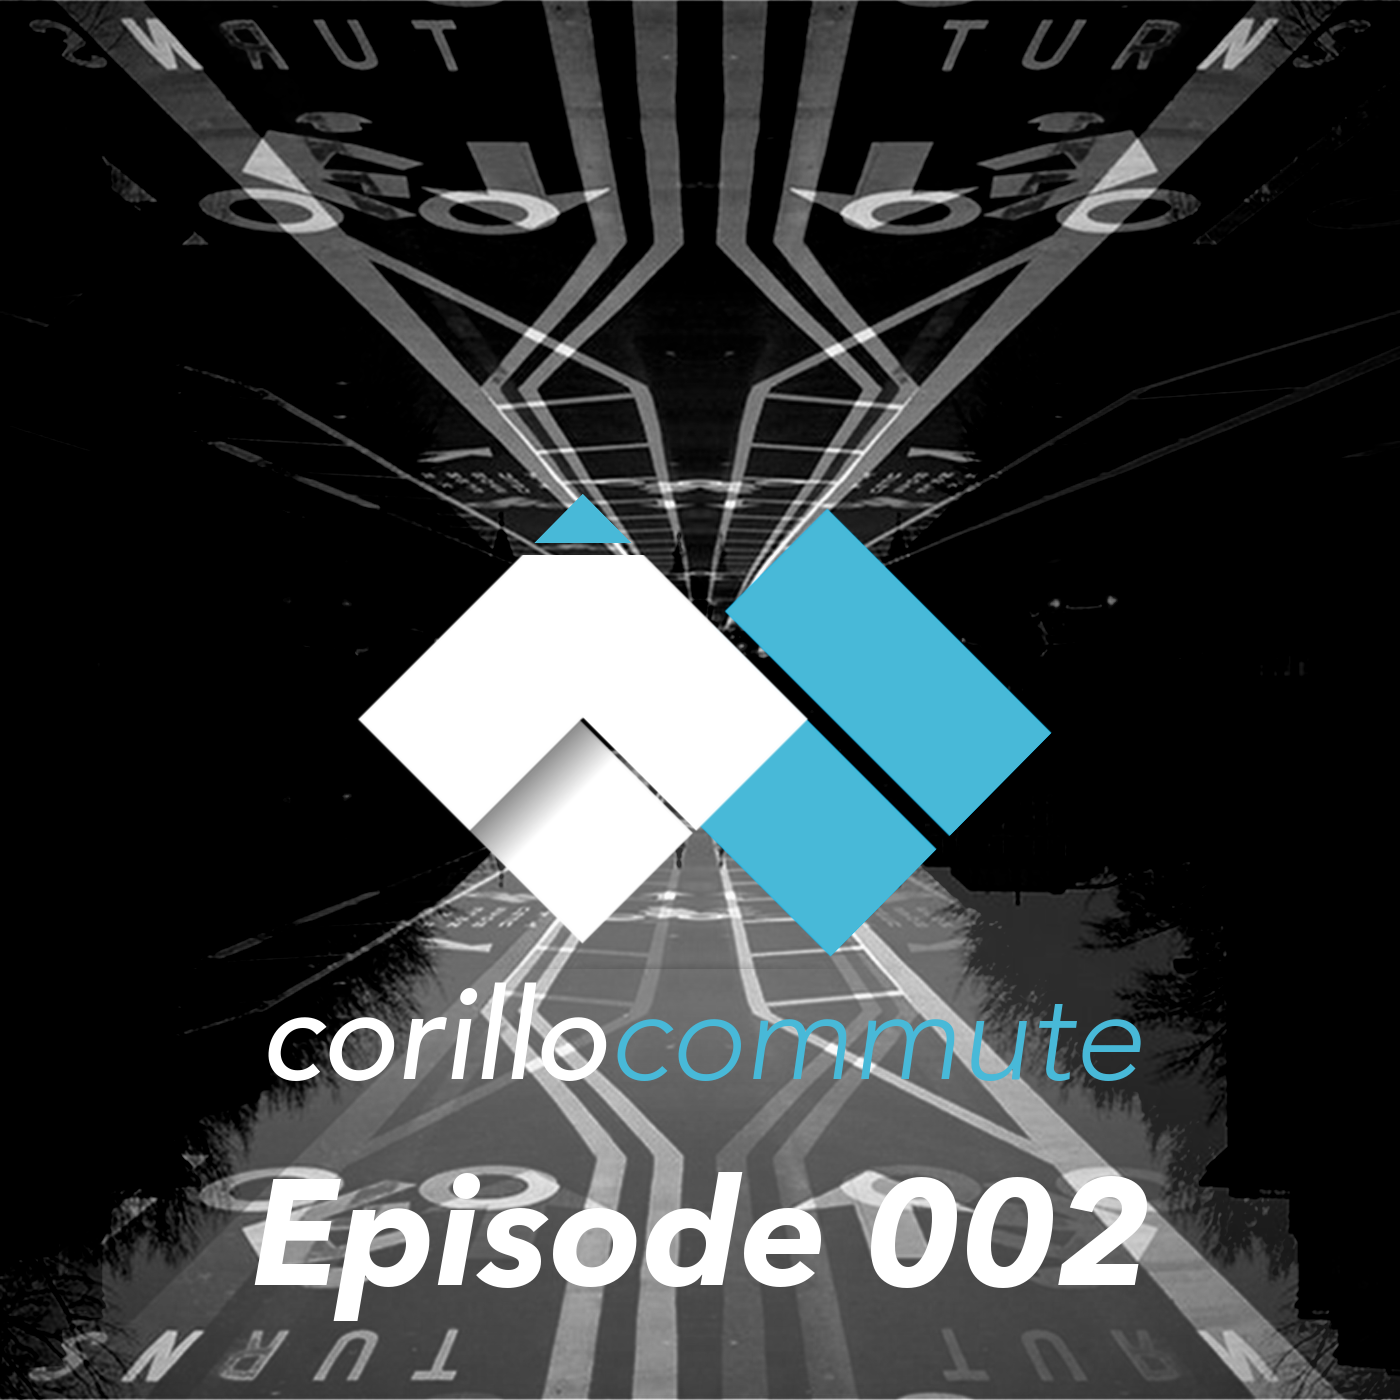 Corillo Commute Episode 002